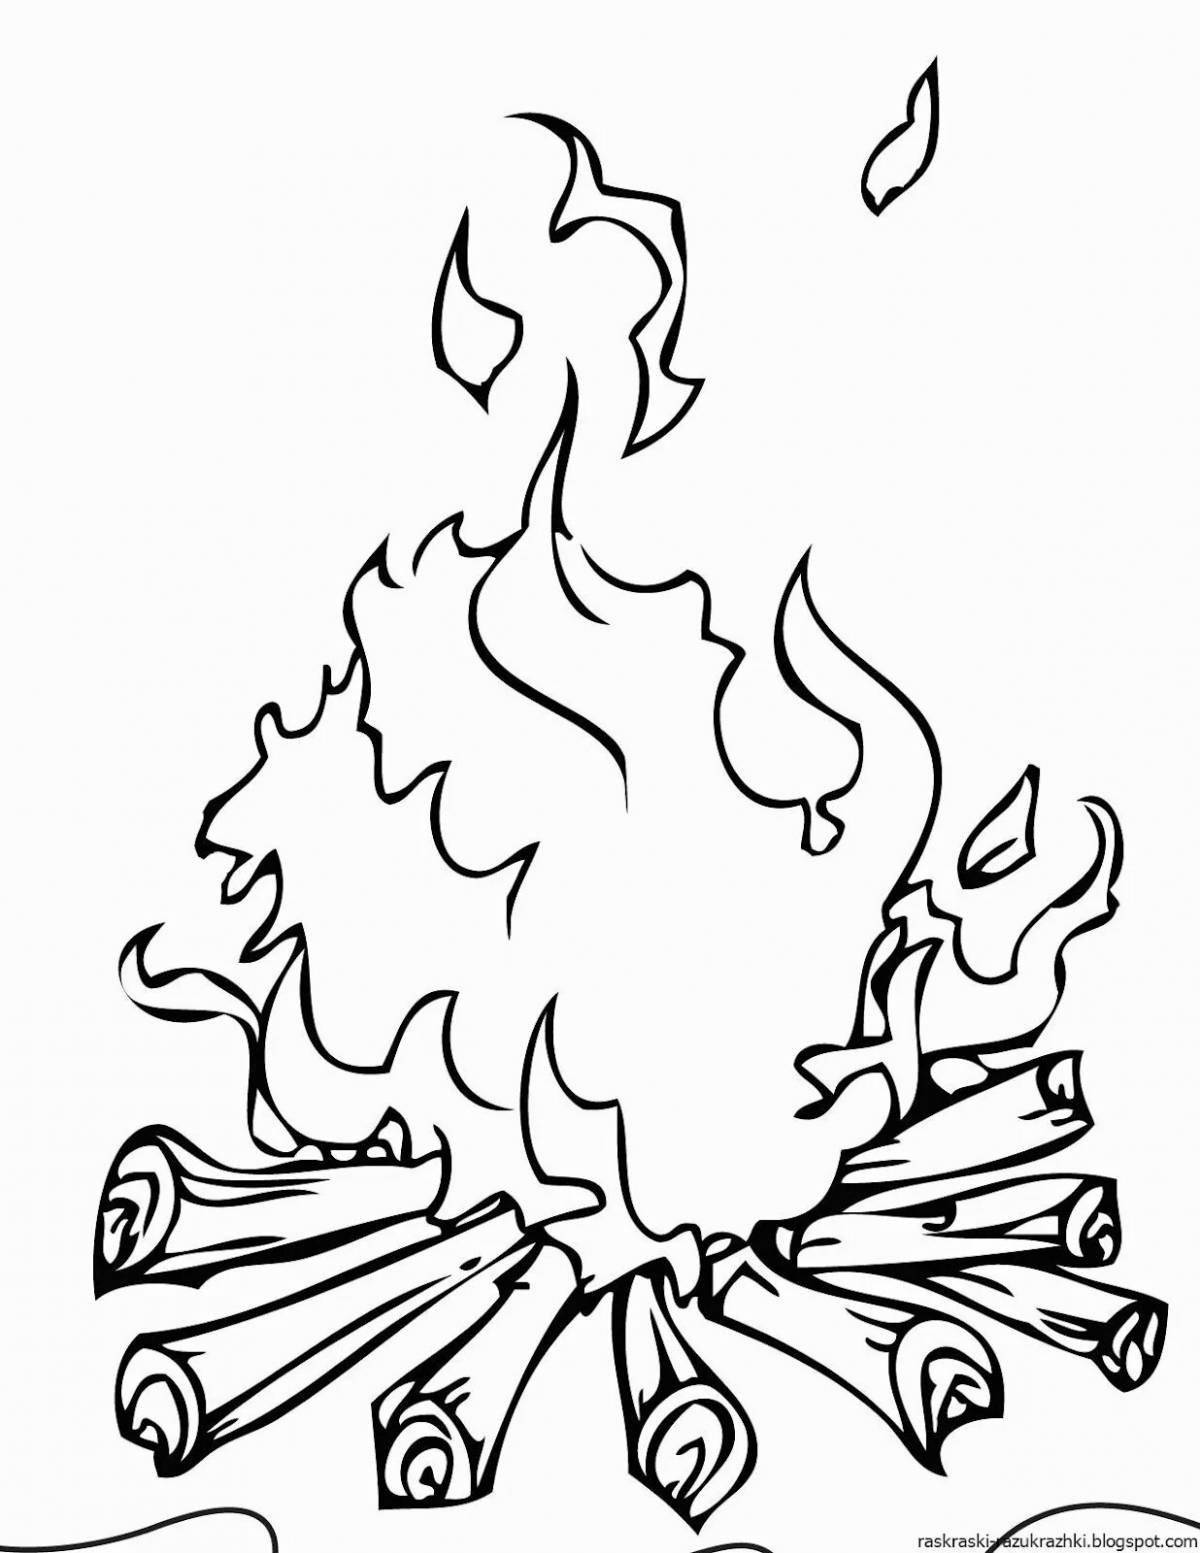 Анимированная страница раскраски пламени для детей